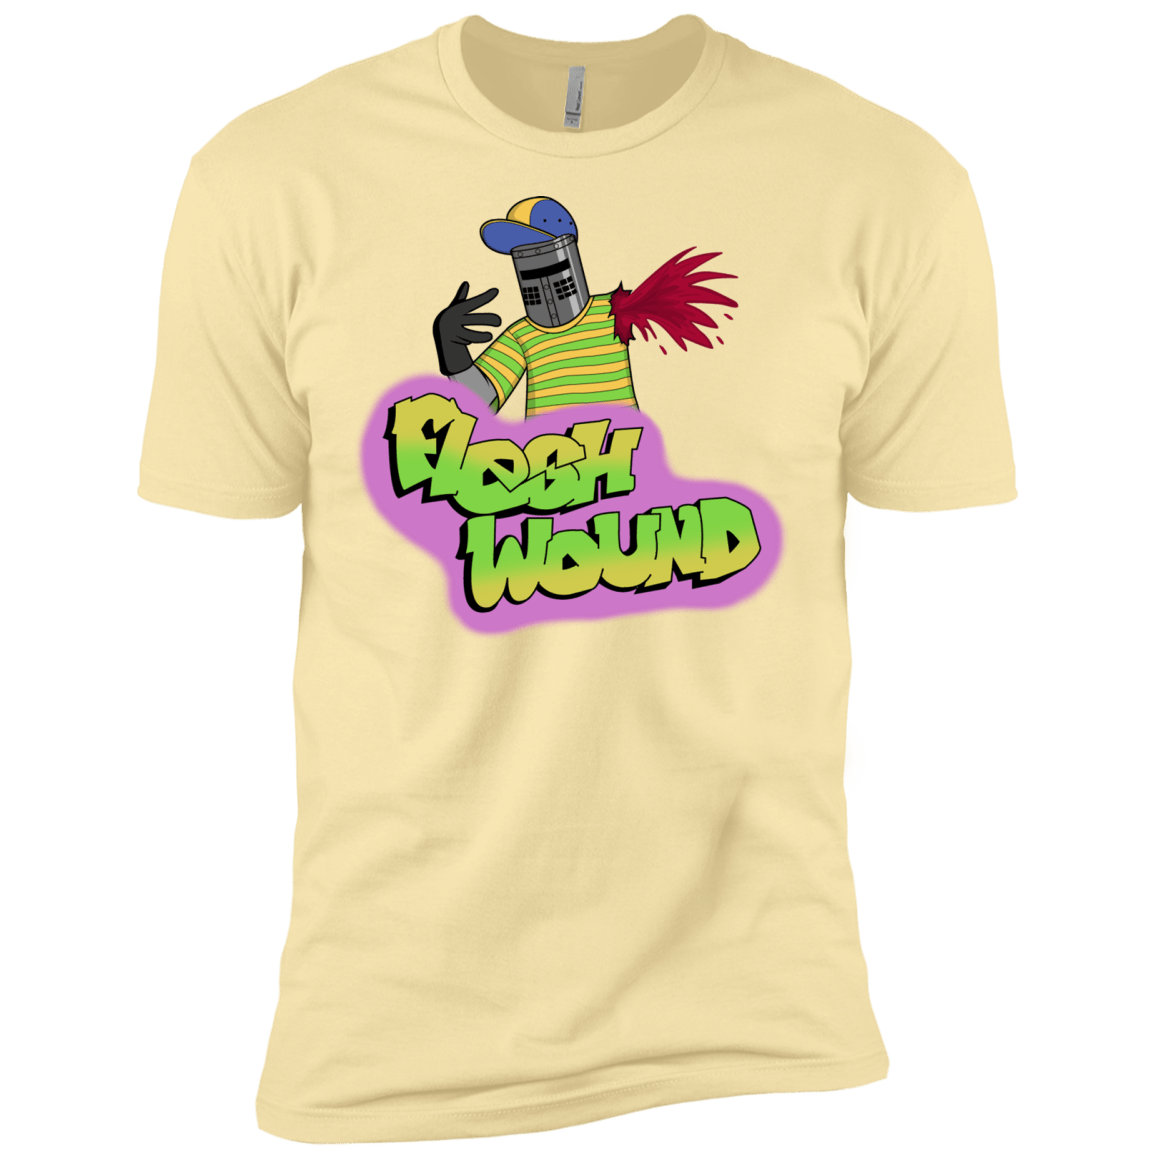 T-Shirts Banana Cream / X-Small Flesh Wound Men's Premium T-Shirt